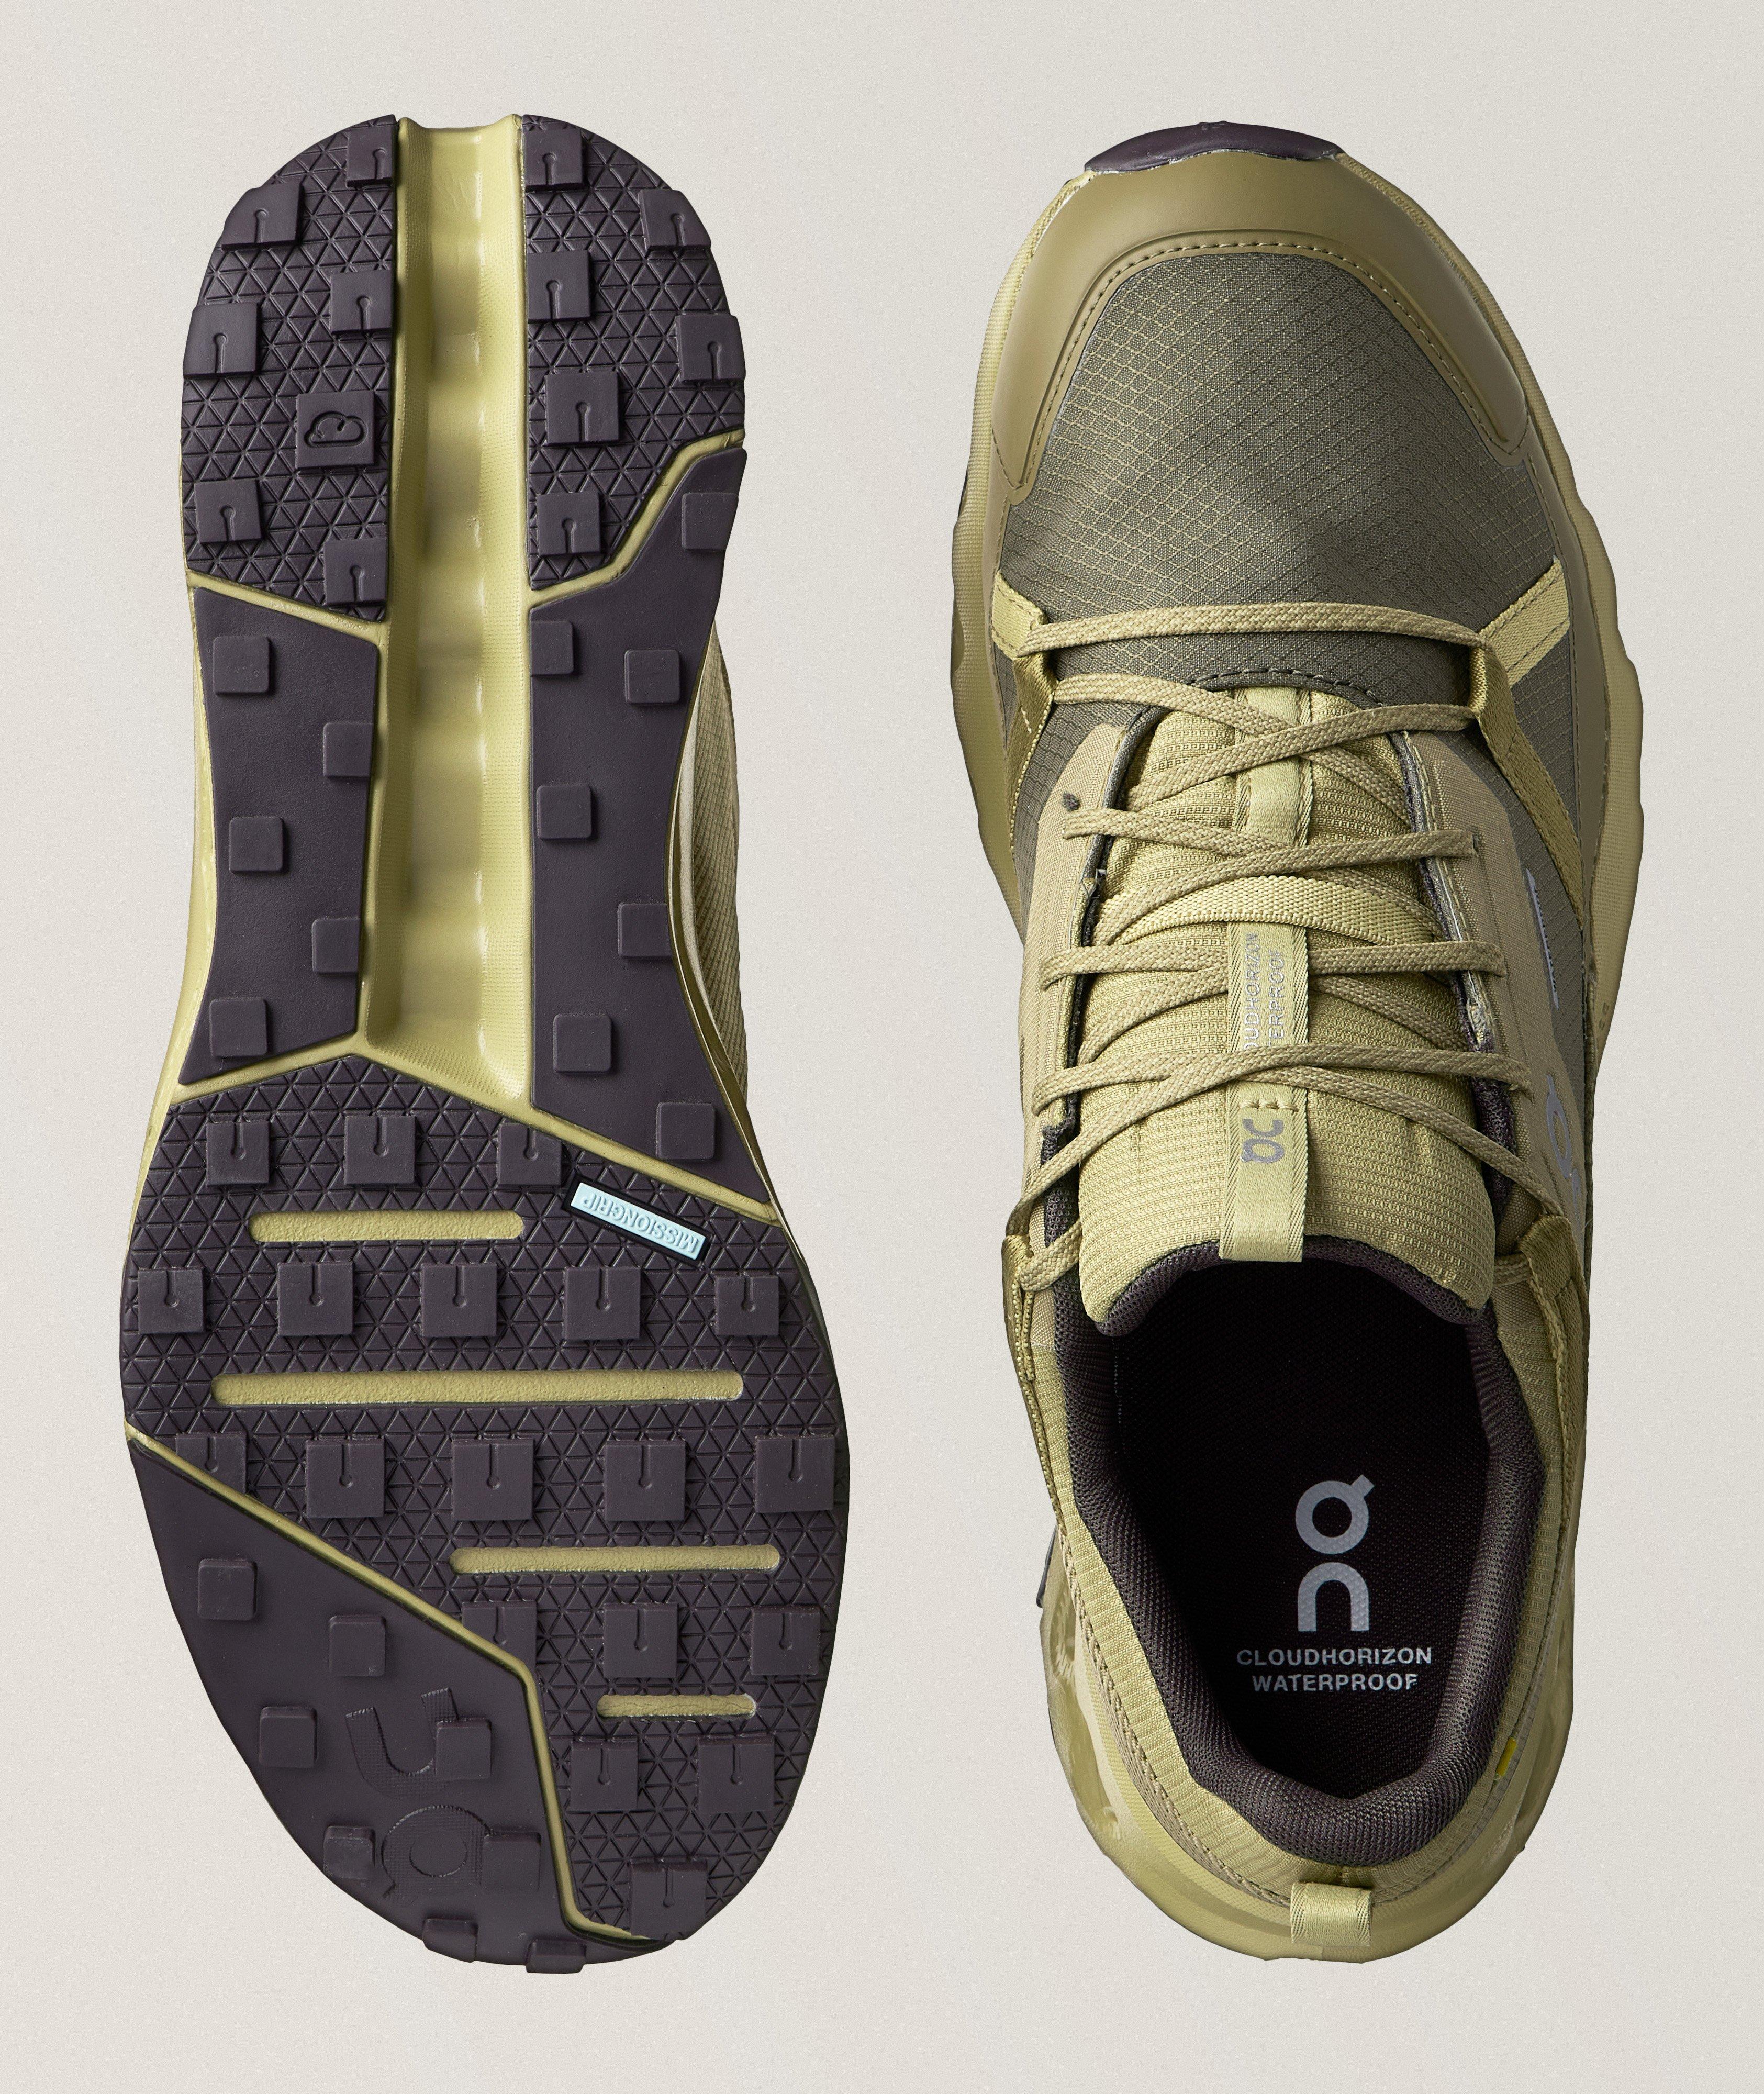 Chaussure sport Cloudhorizon aux textures variées image 2